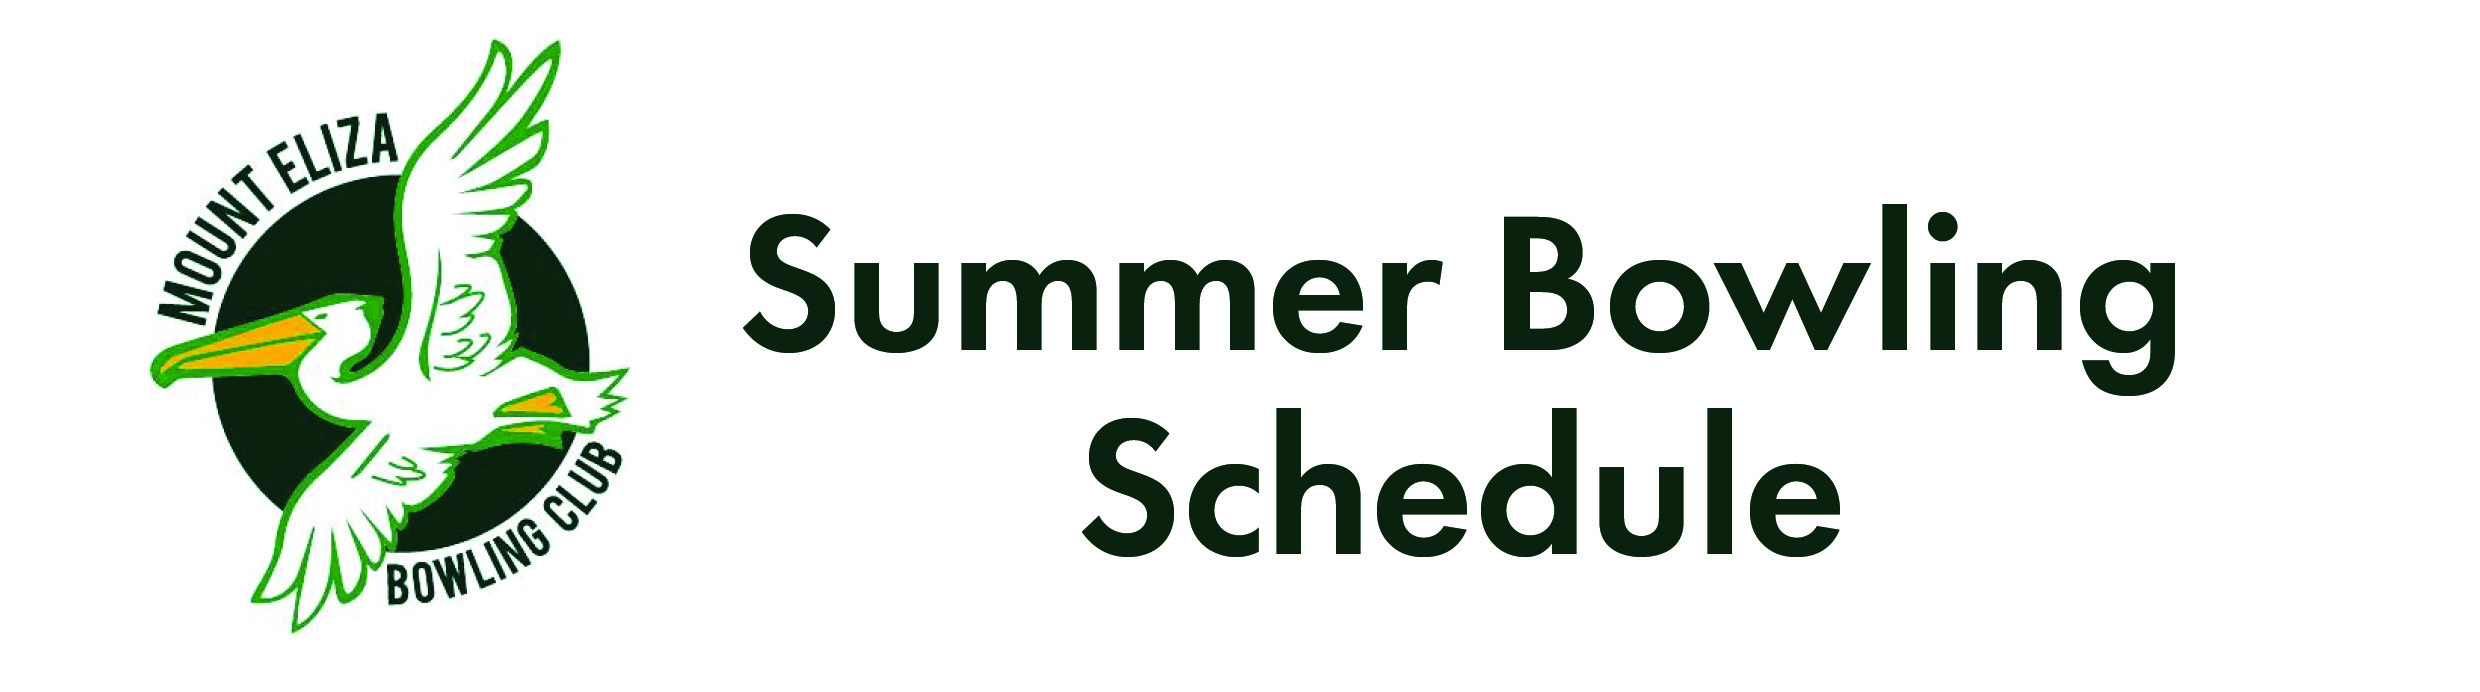 Summer Bowling Schedule Mt Eliza Bowls Club